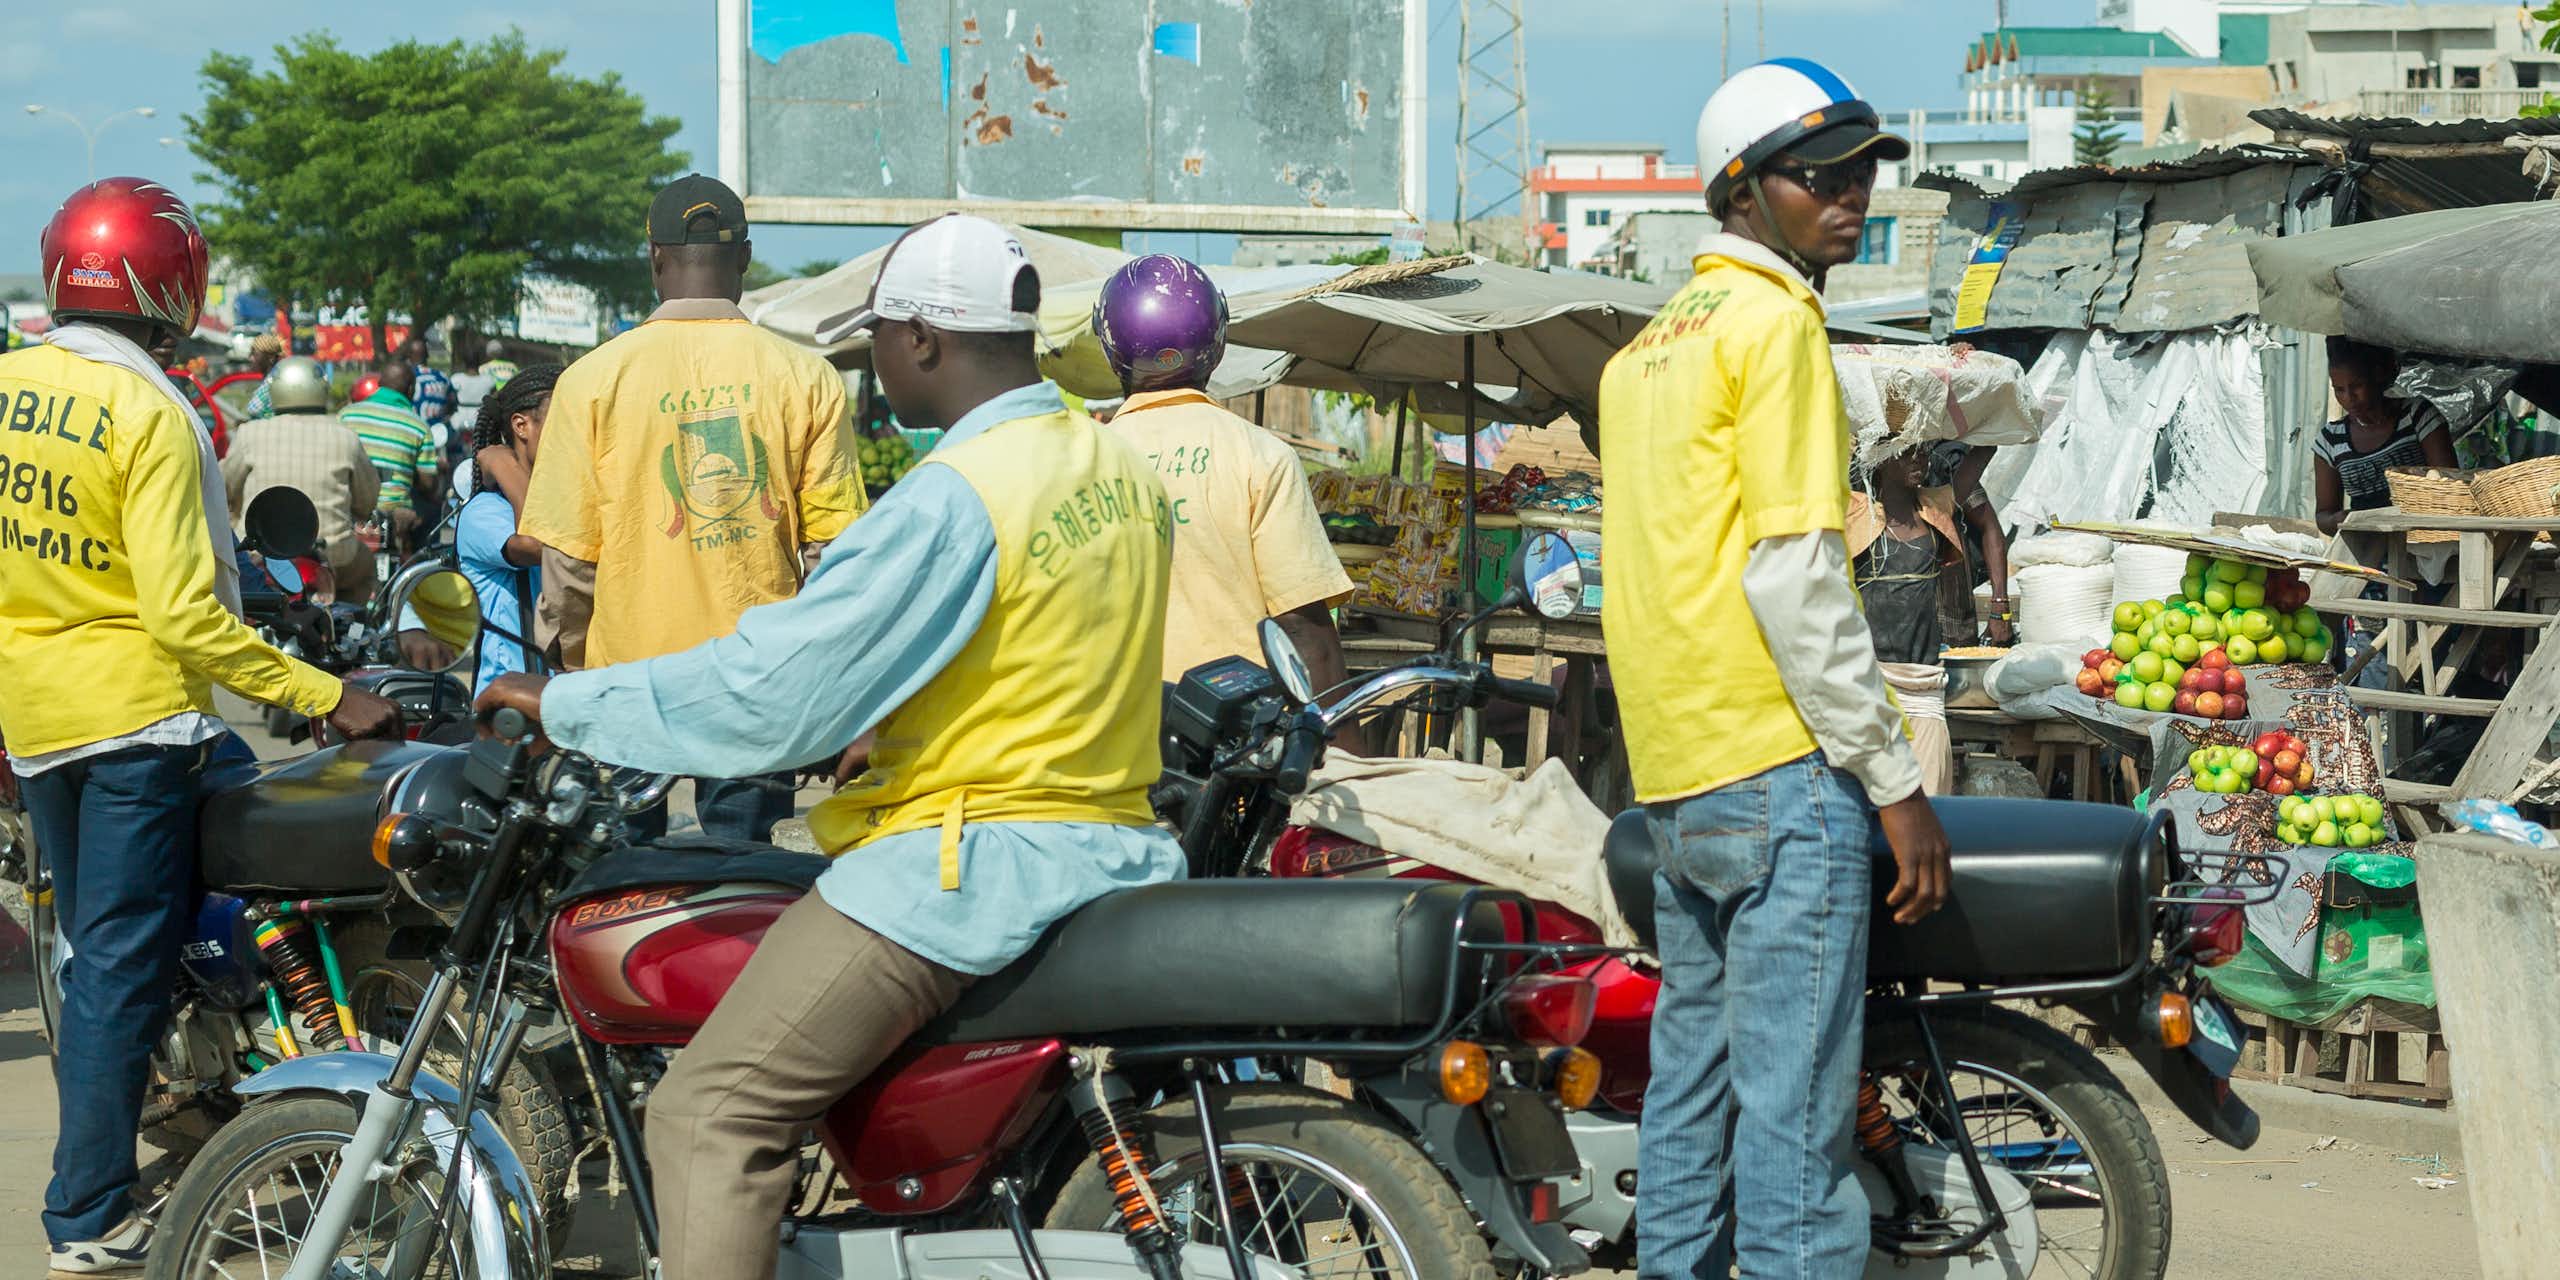 Plusieurs personnes sur des motos dans une ville d'Afrique